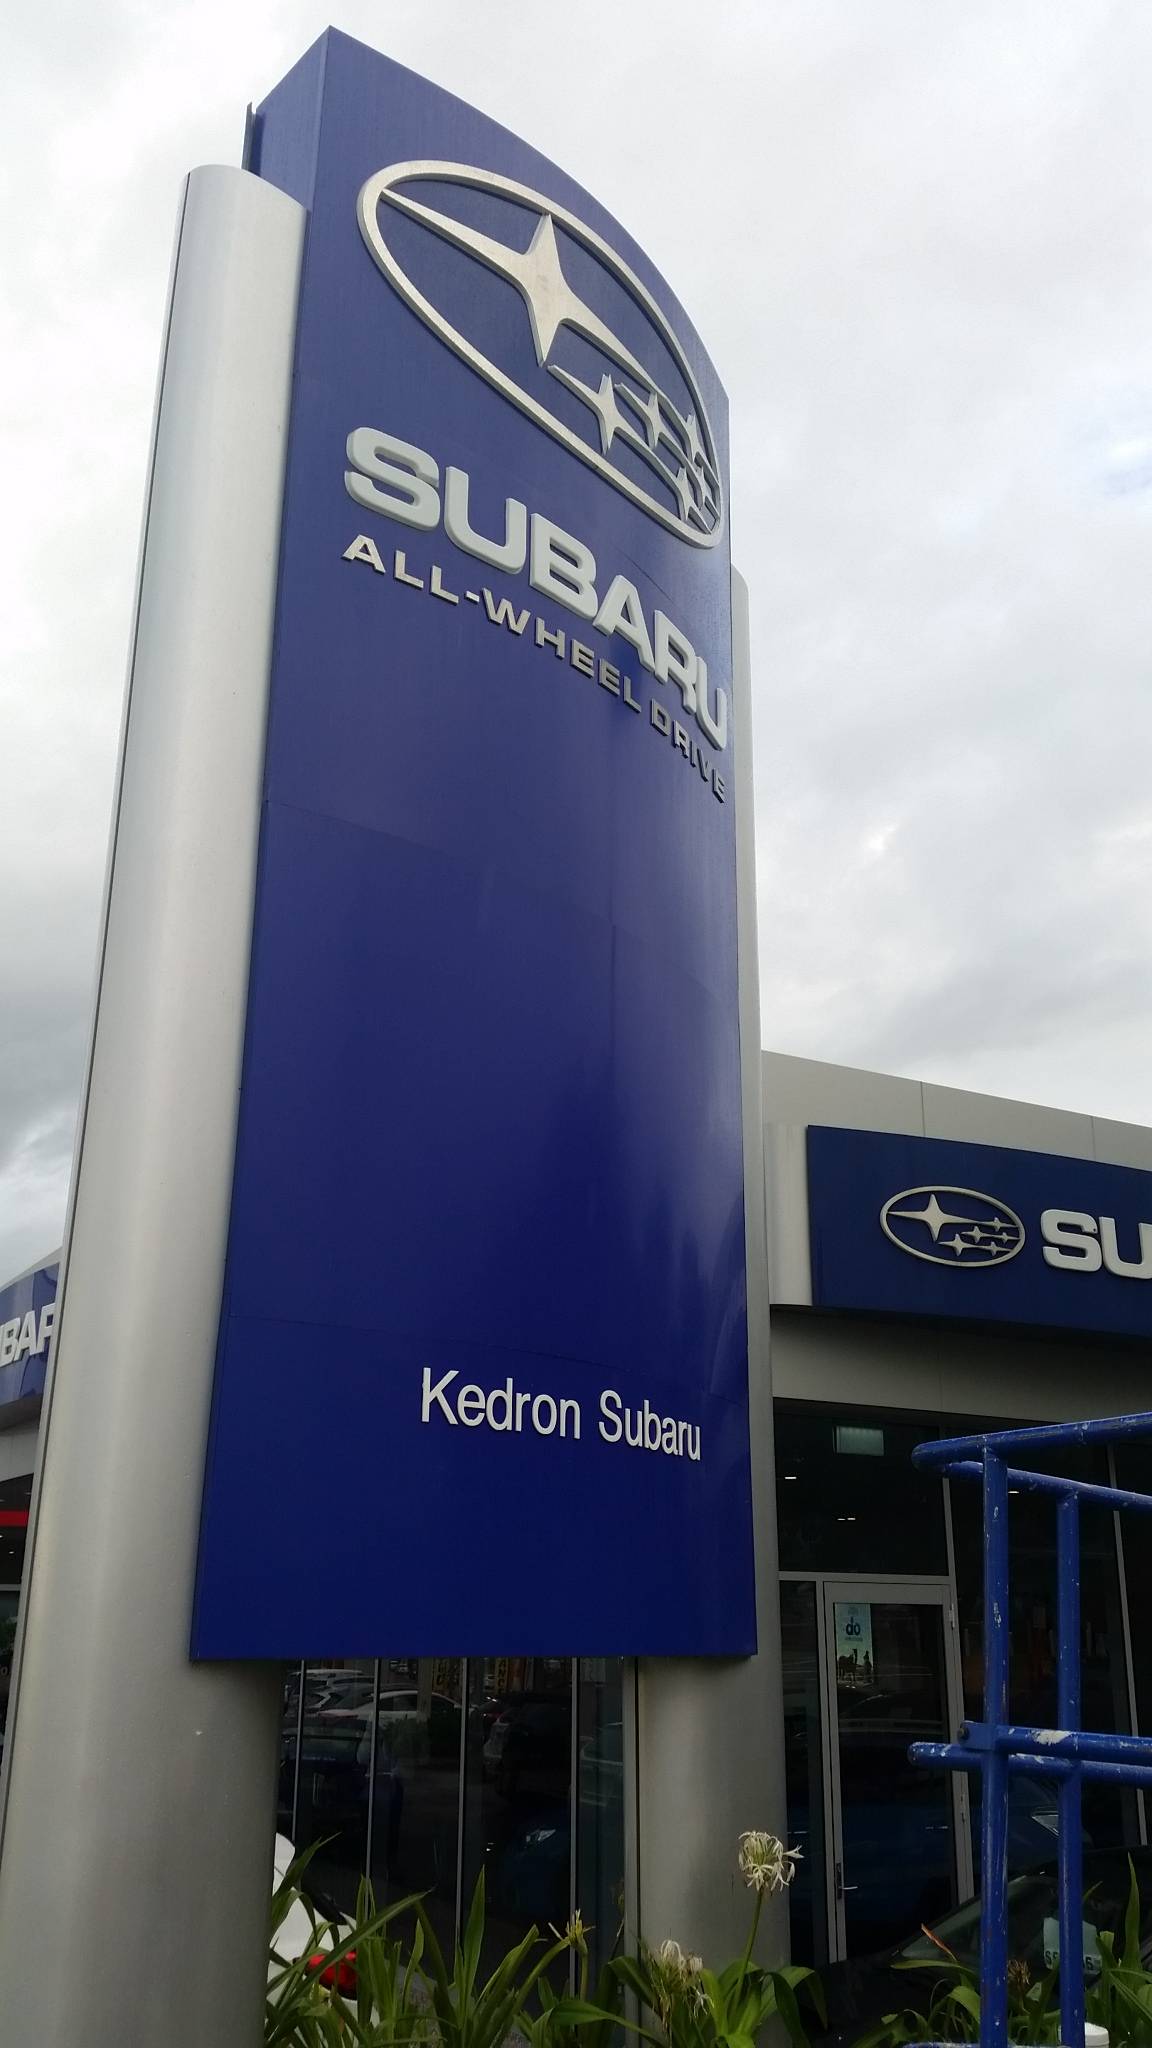 Subaru Pylon